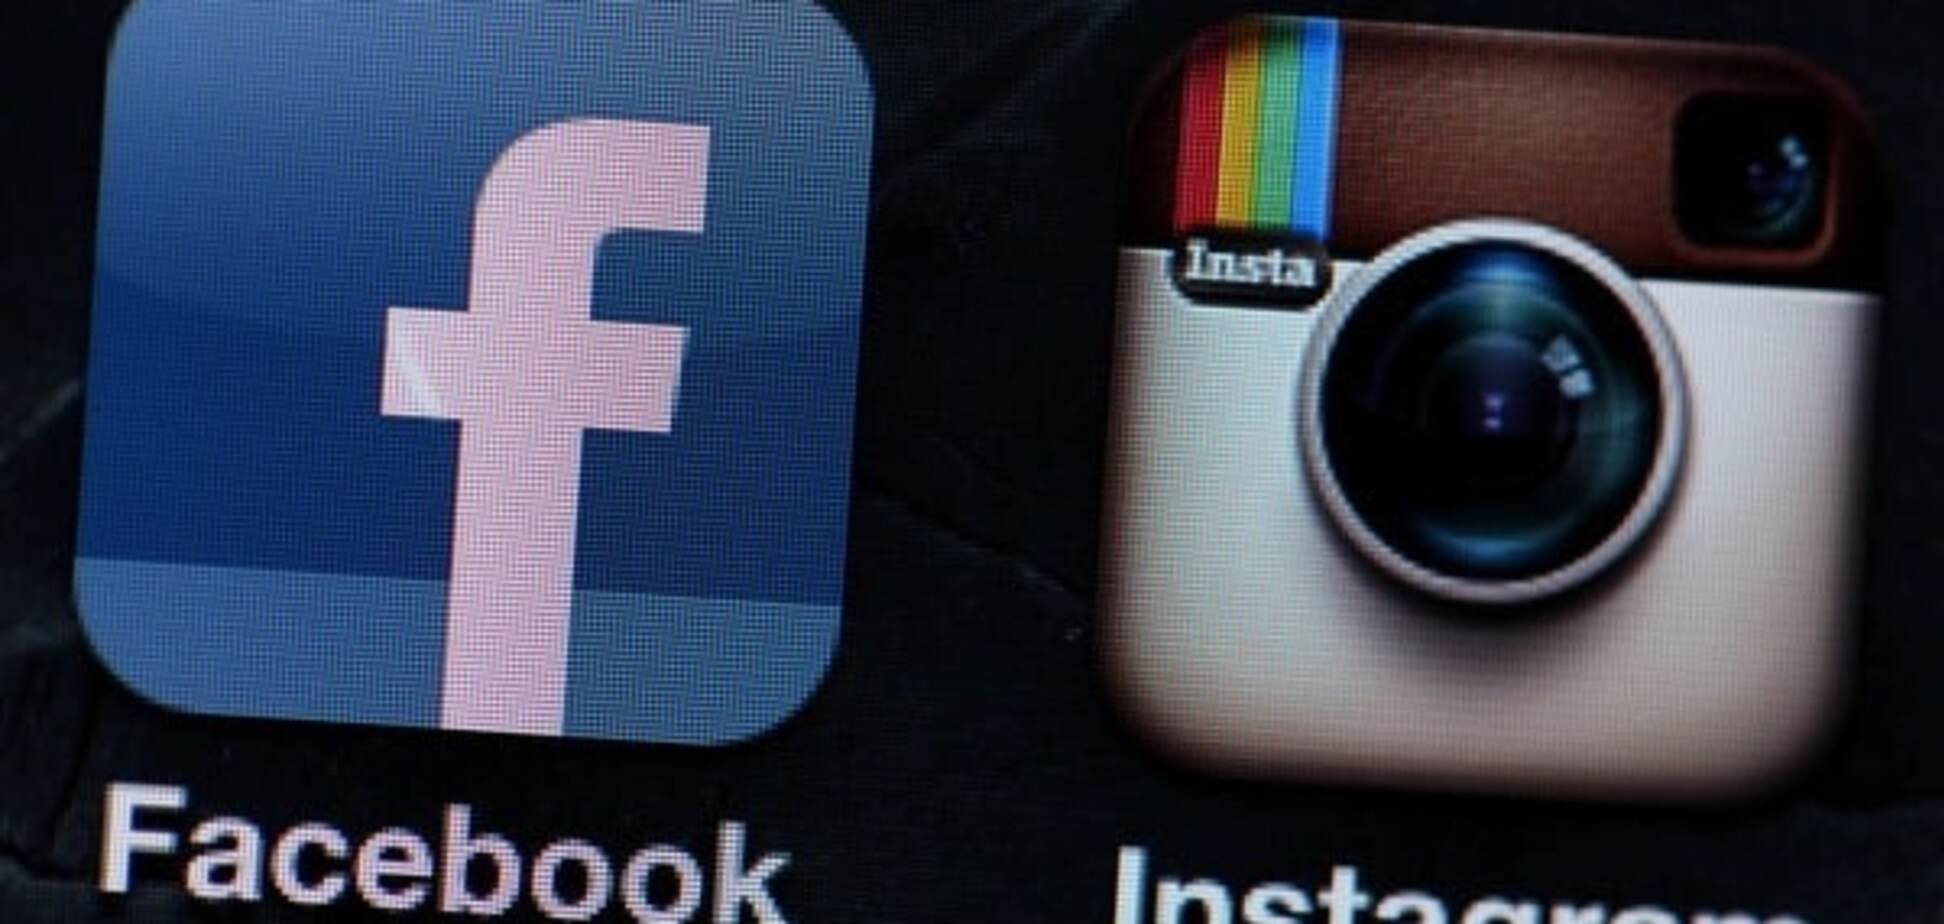 Пользователи нашли секретную возможность в Facebook и Instagram